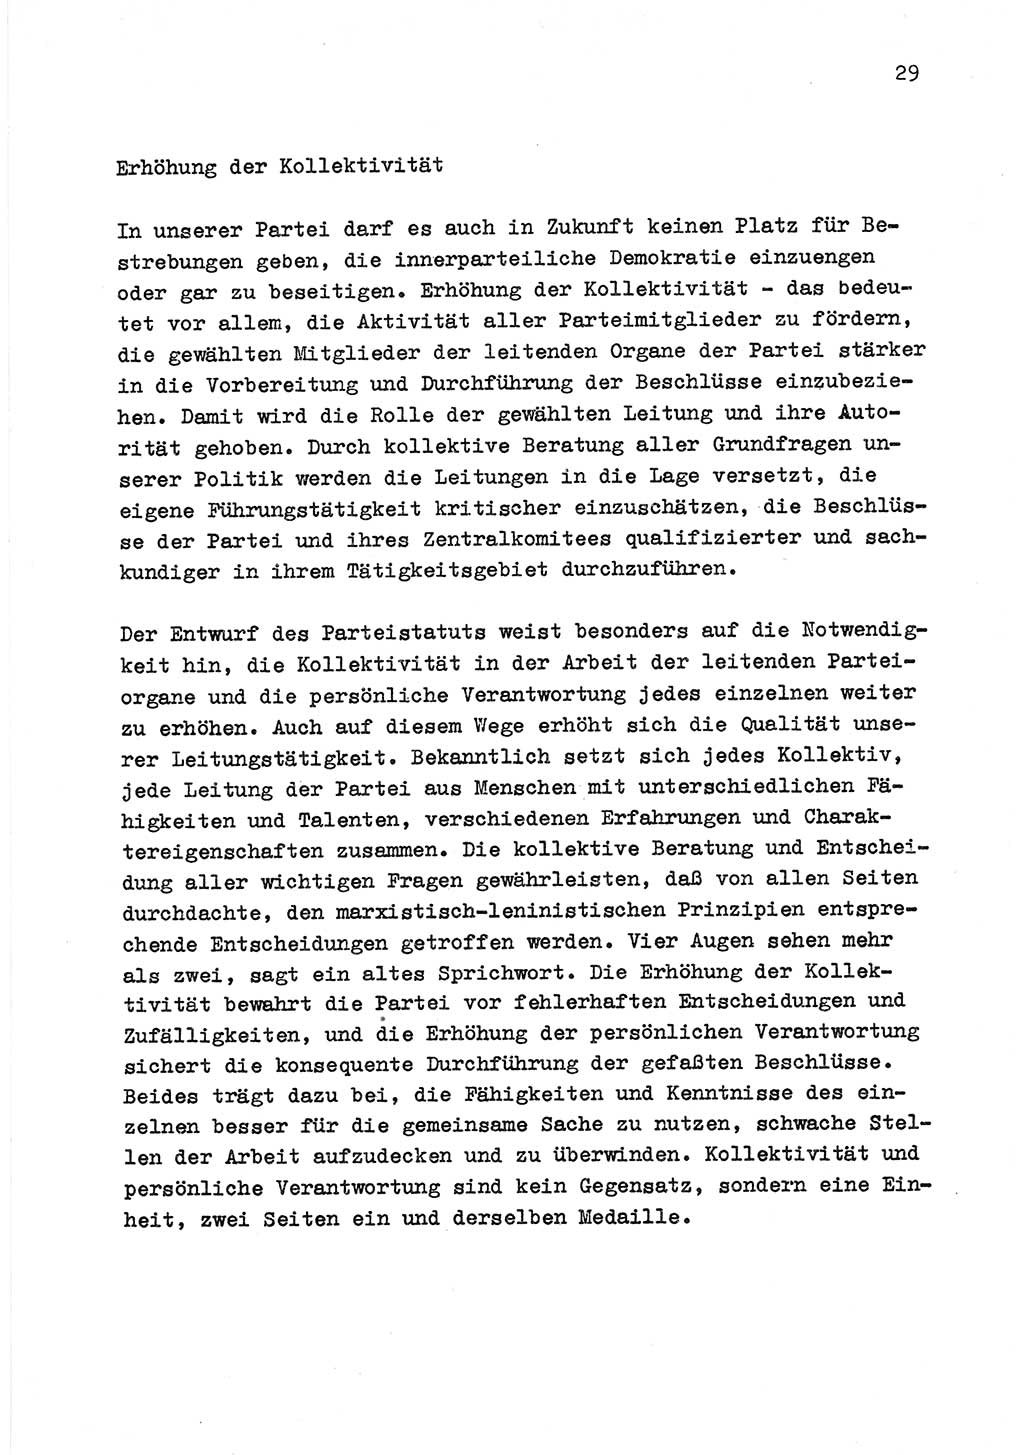 Zu Fragen der Parteiarbeit [Sozialistische Einheitspartei Deutschlands (SED) Deutsche Demokratische Republik (DDR)] 1979, Seite 29 (Fr. PA SED DDR 1979, S. 29)